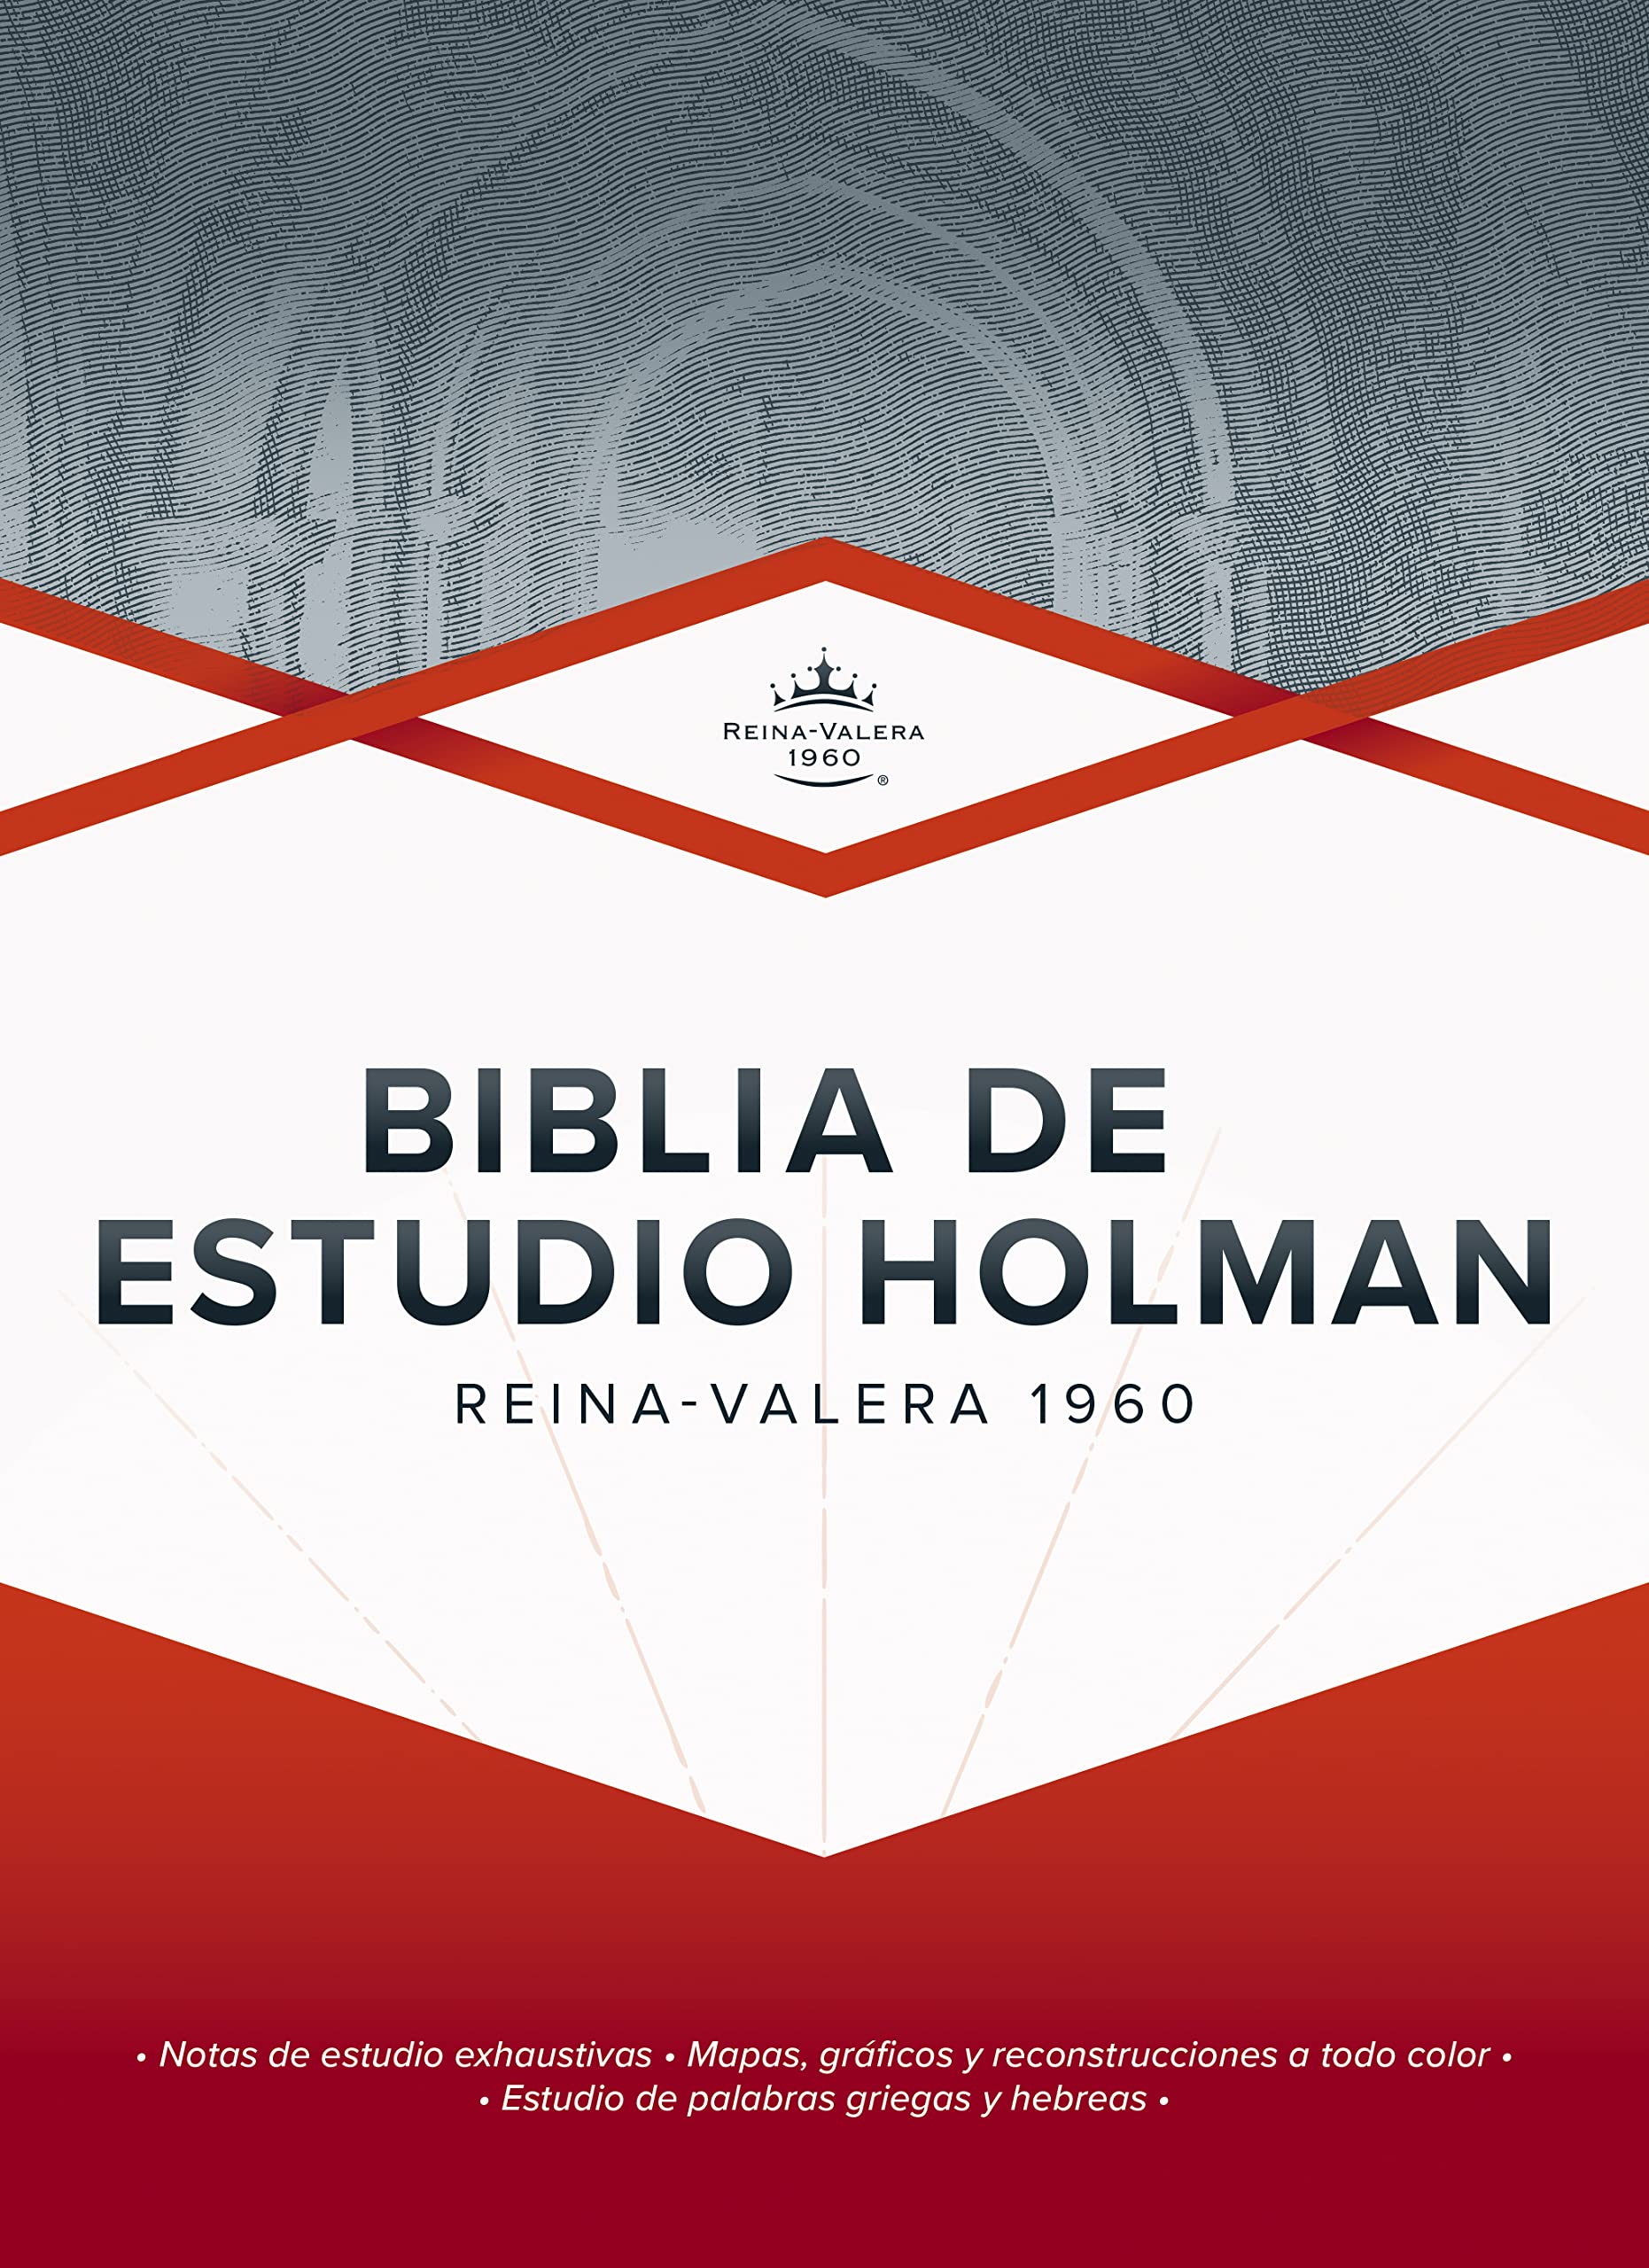 RVR 1960 Biblia de Estudio Holman